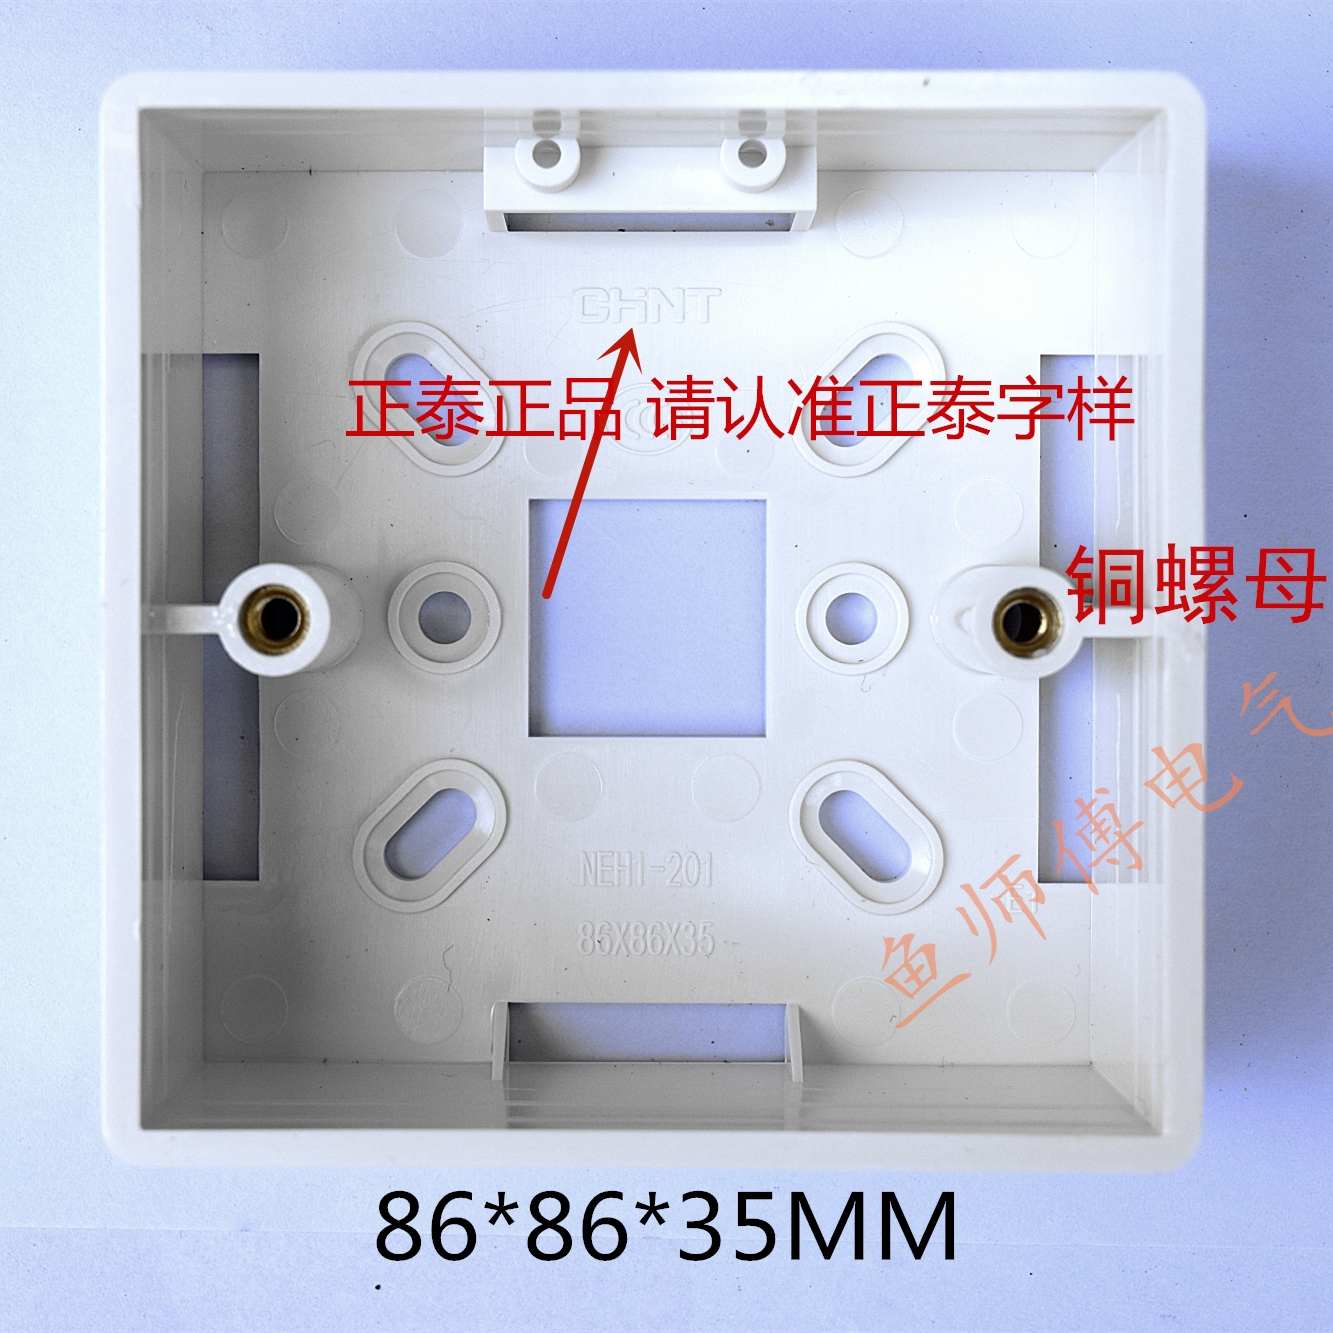 Zhengtai genuine switch socket bottom box 86 open bottom box junction box white PVC thickening